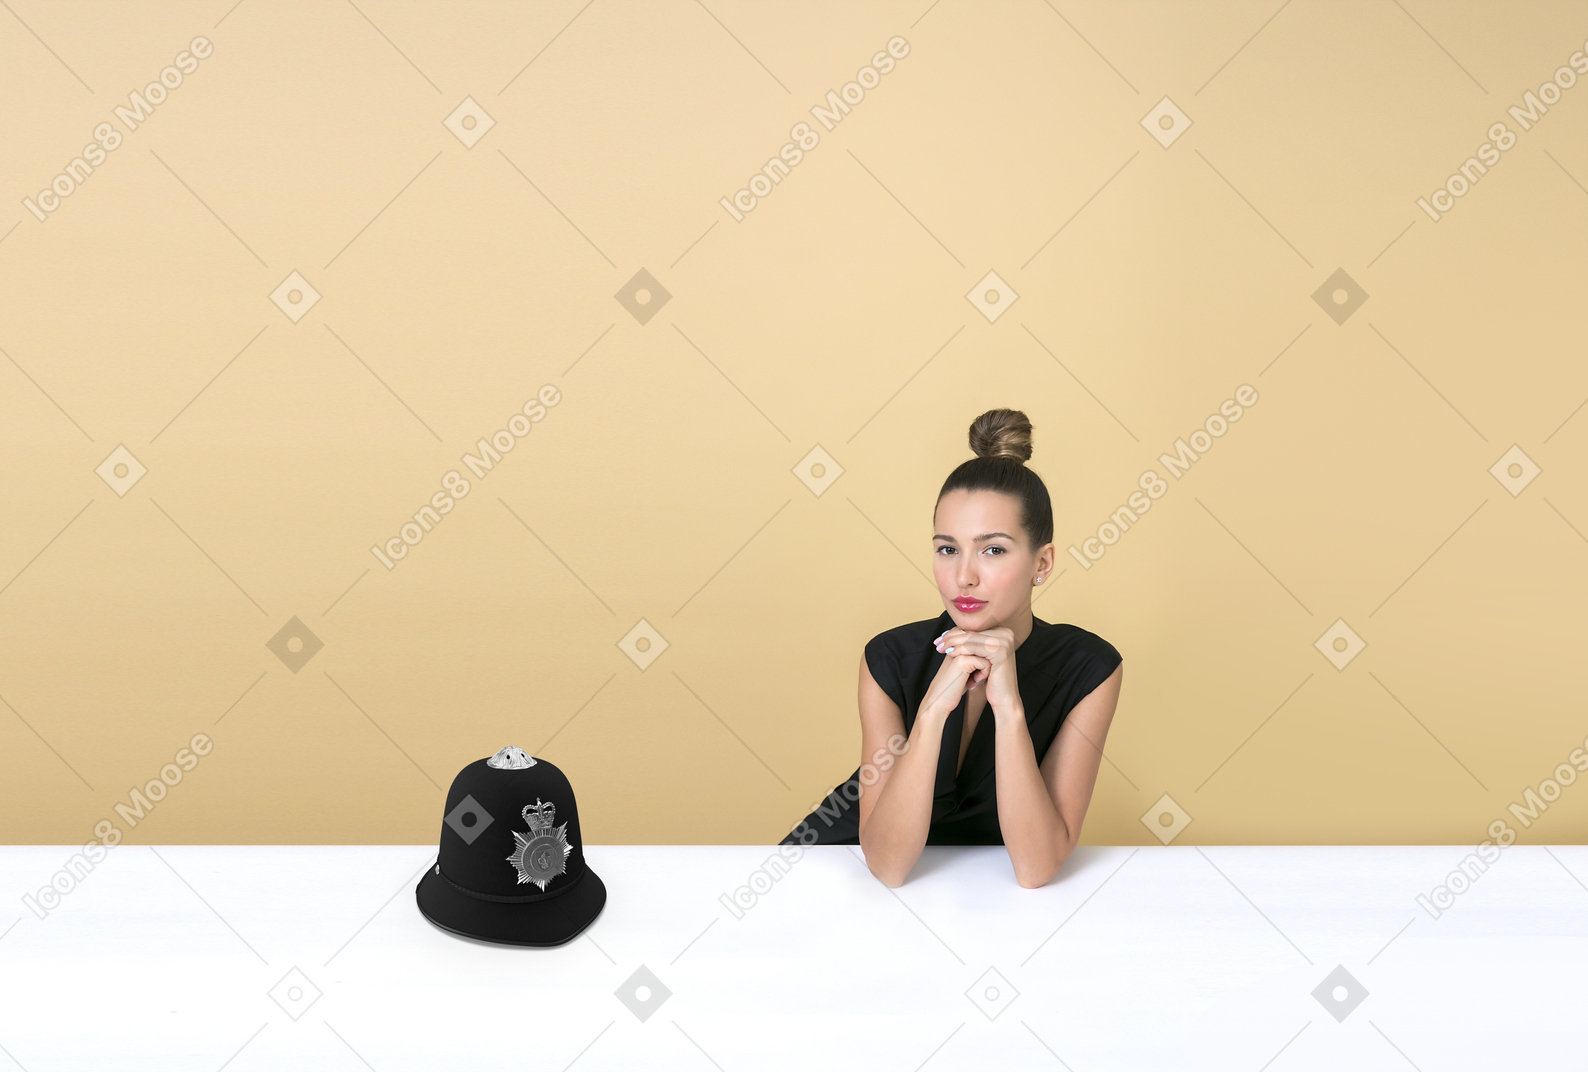 Belle jeune femme assise à côté d'un casque de gardien